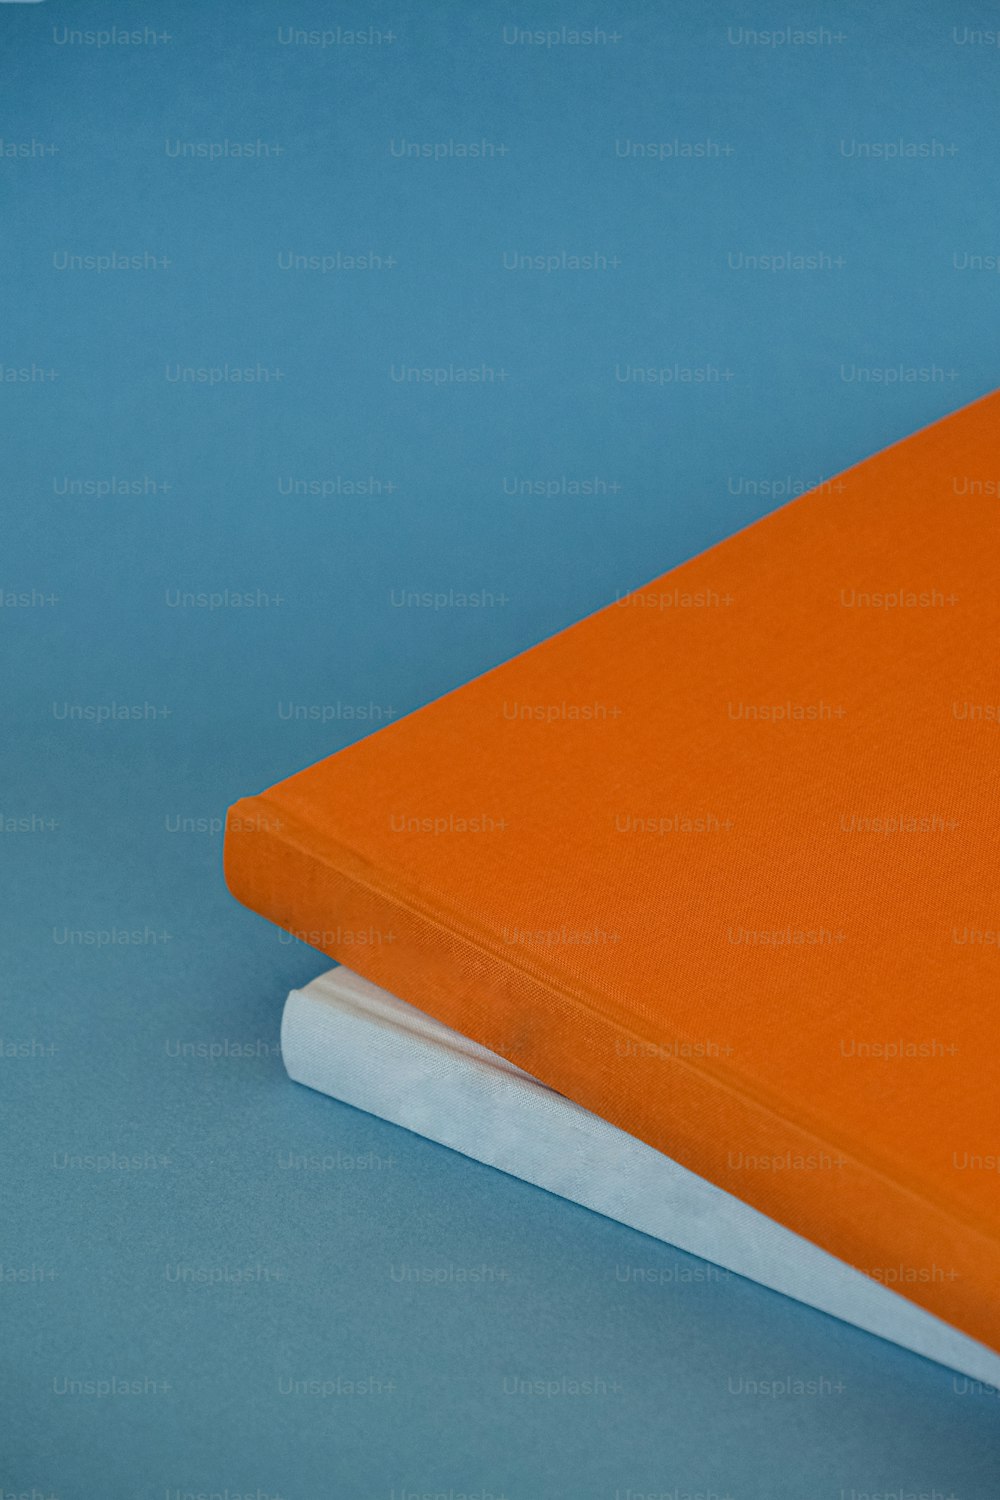 Ein orangefarbenes Notizbuch, das auf einem weißen Buch sitzt